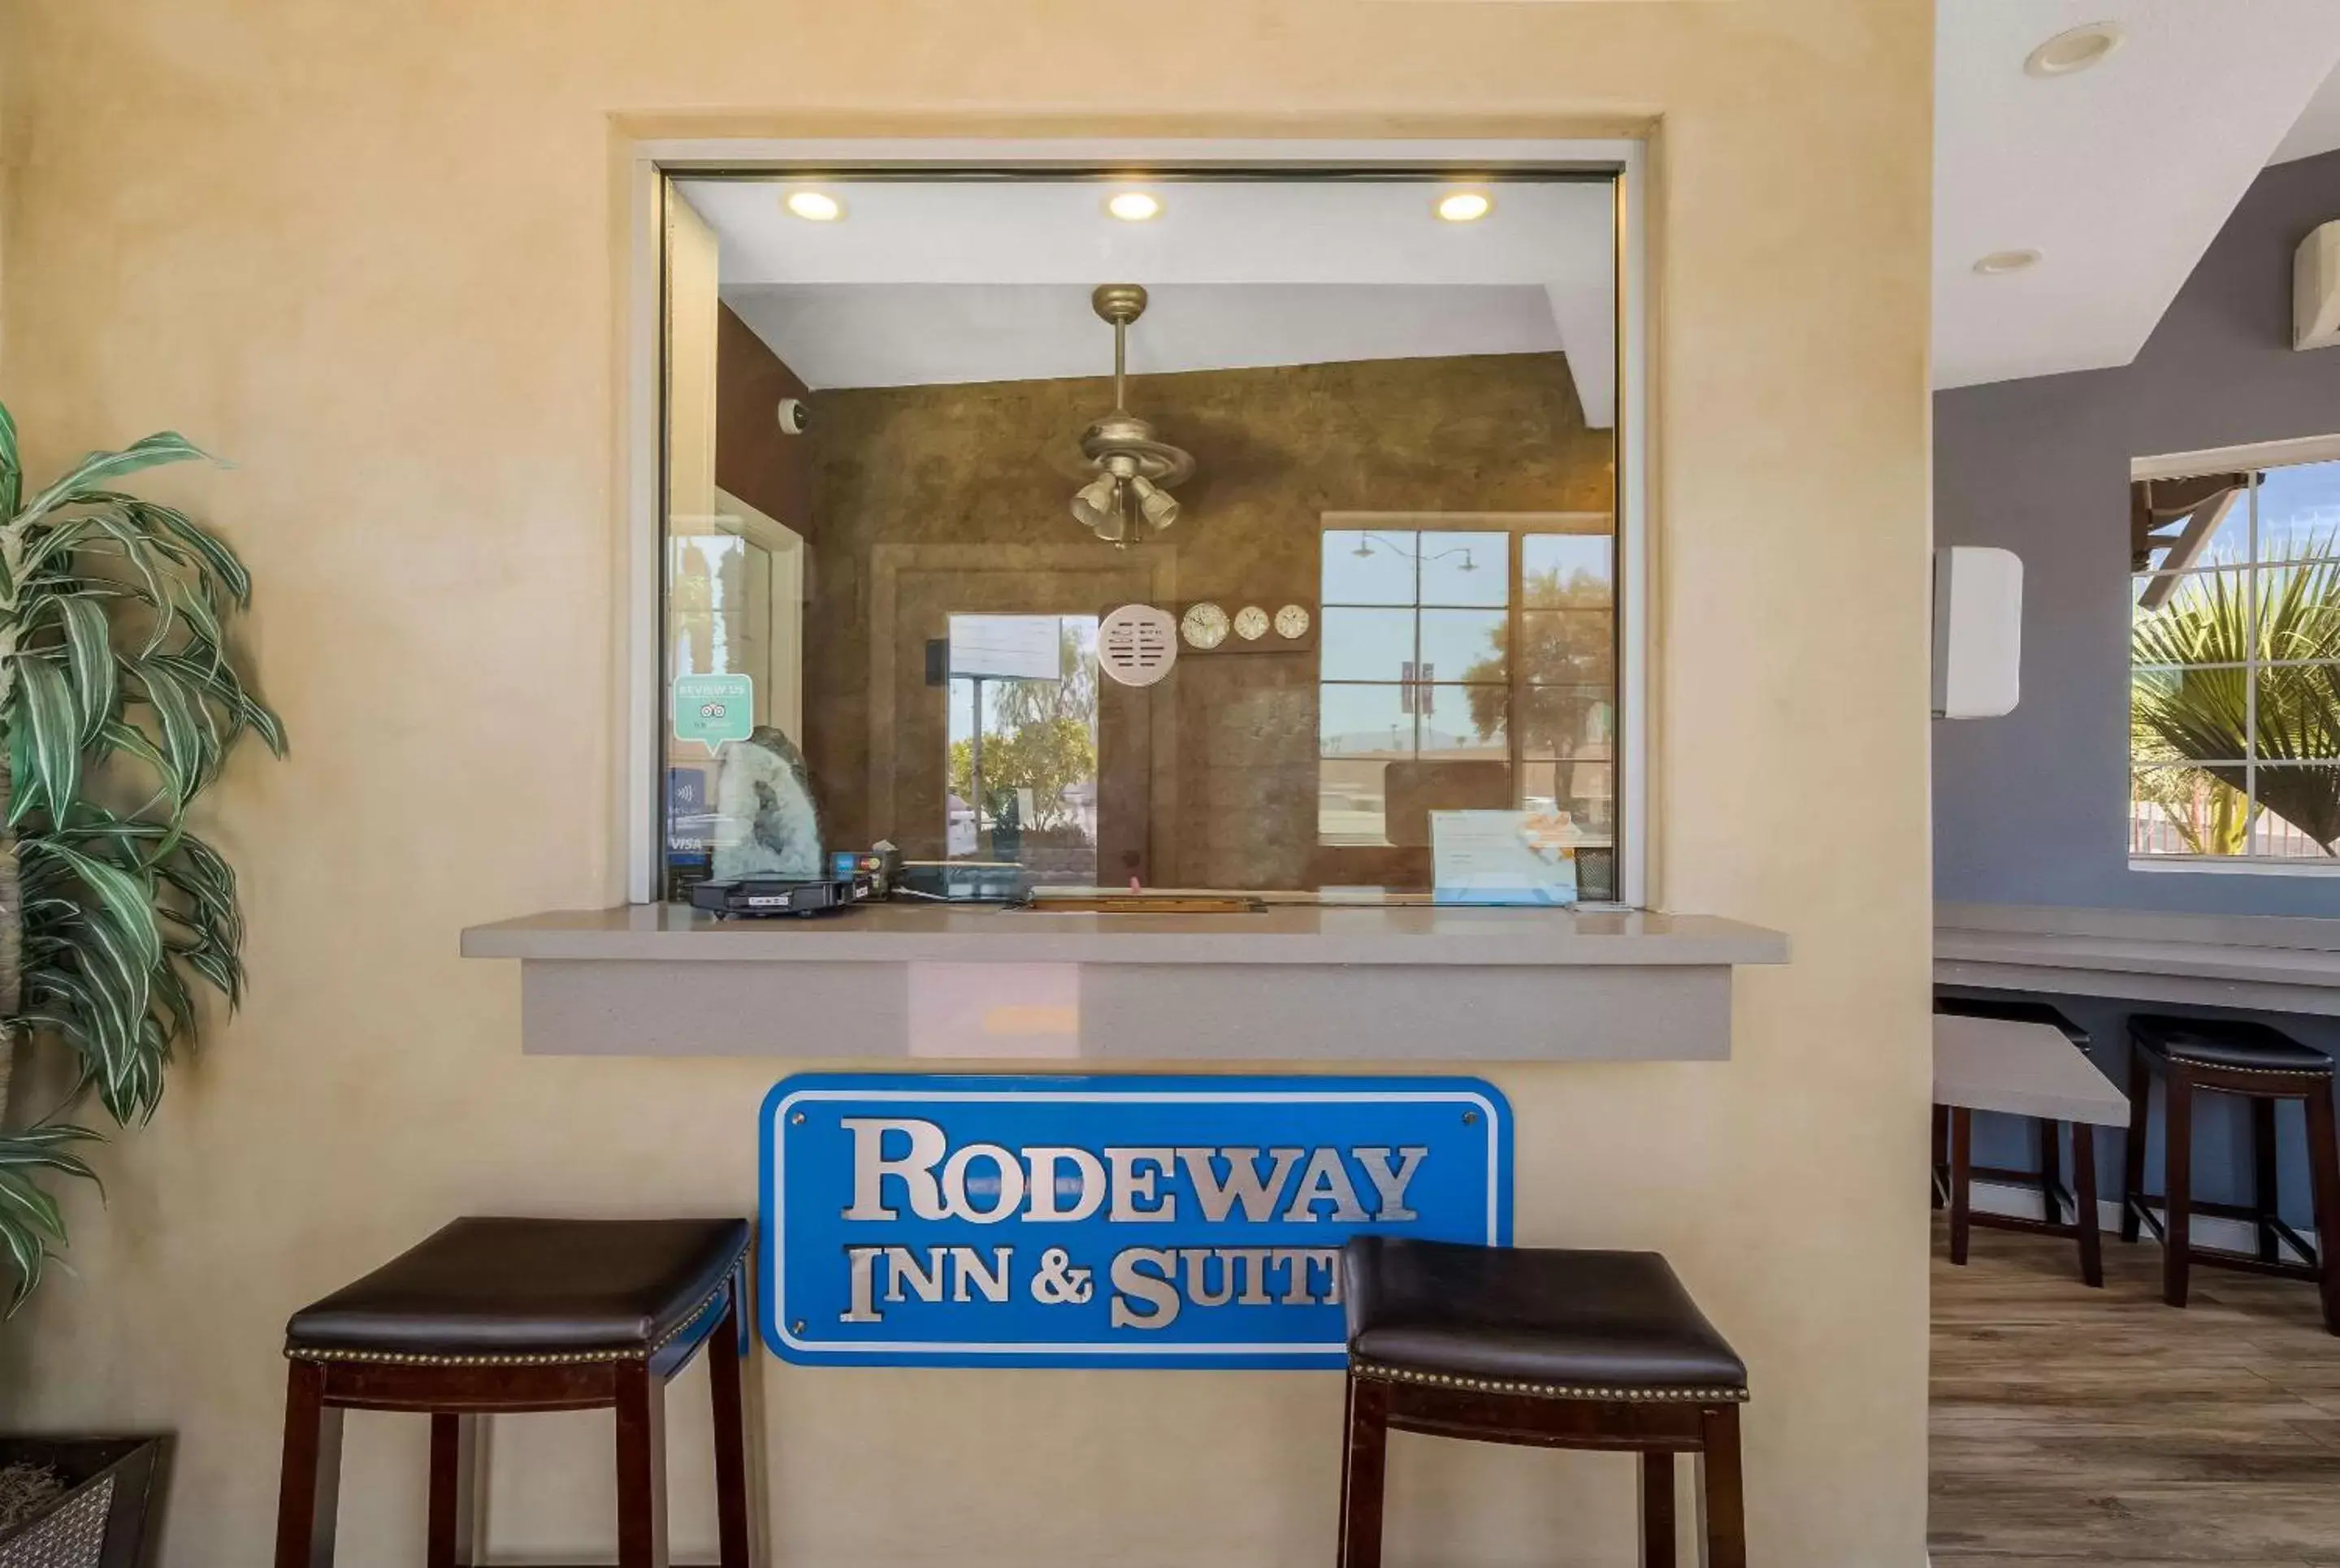 Lobby or reception in Rodeway Inn near Coachella